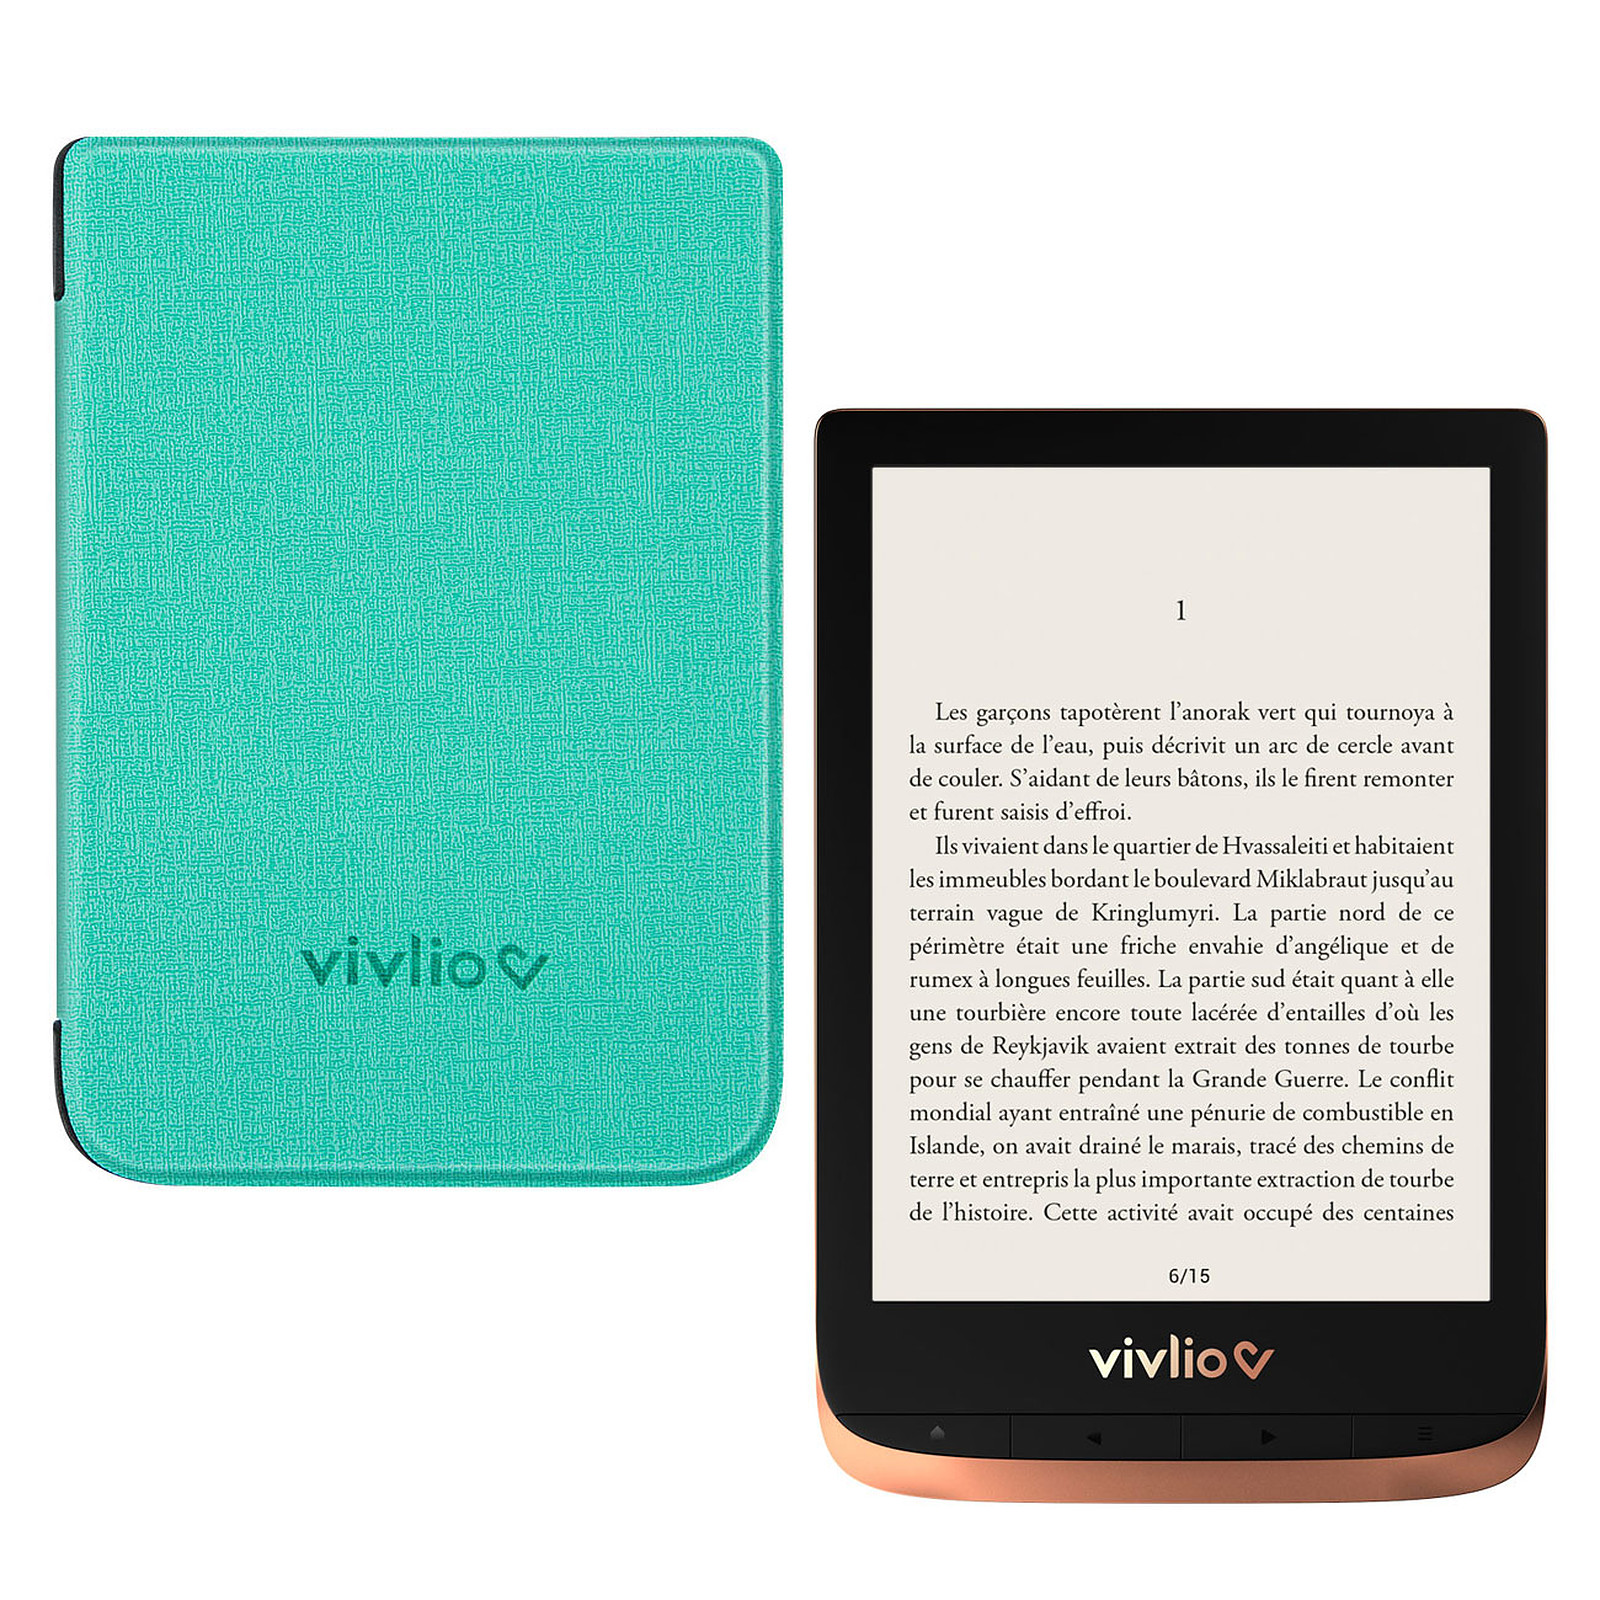 Vivlio Touch HD Plus Cuivre/Noir + Pack d'eBooks OFFERT + Housse Chinee Verte - Liseuse eBook Vivlio